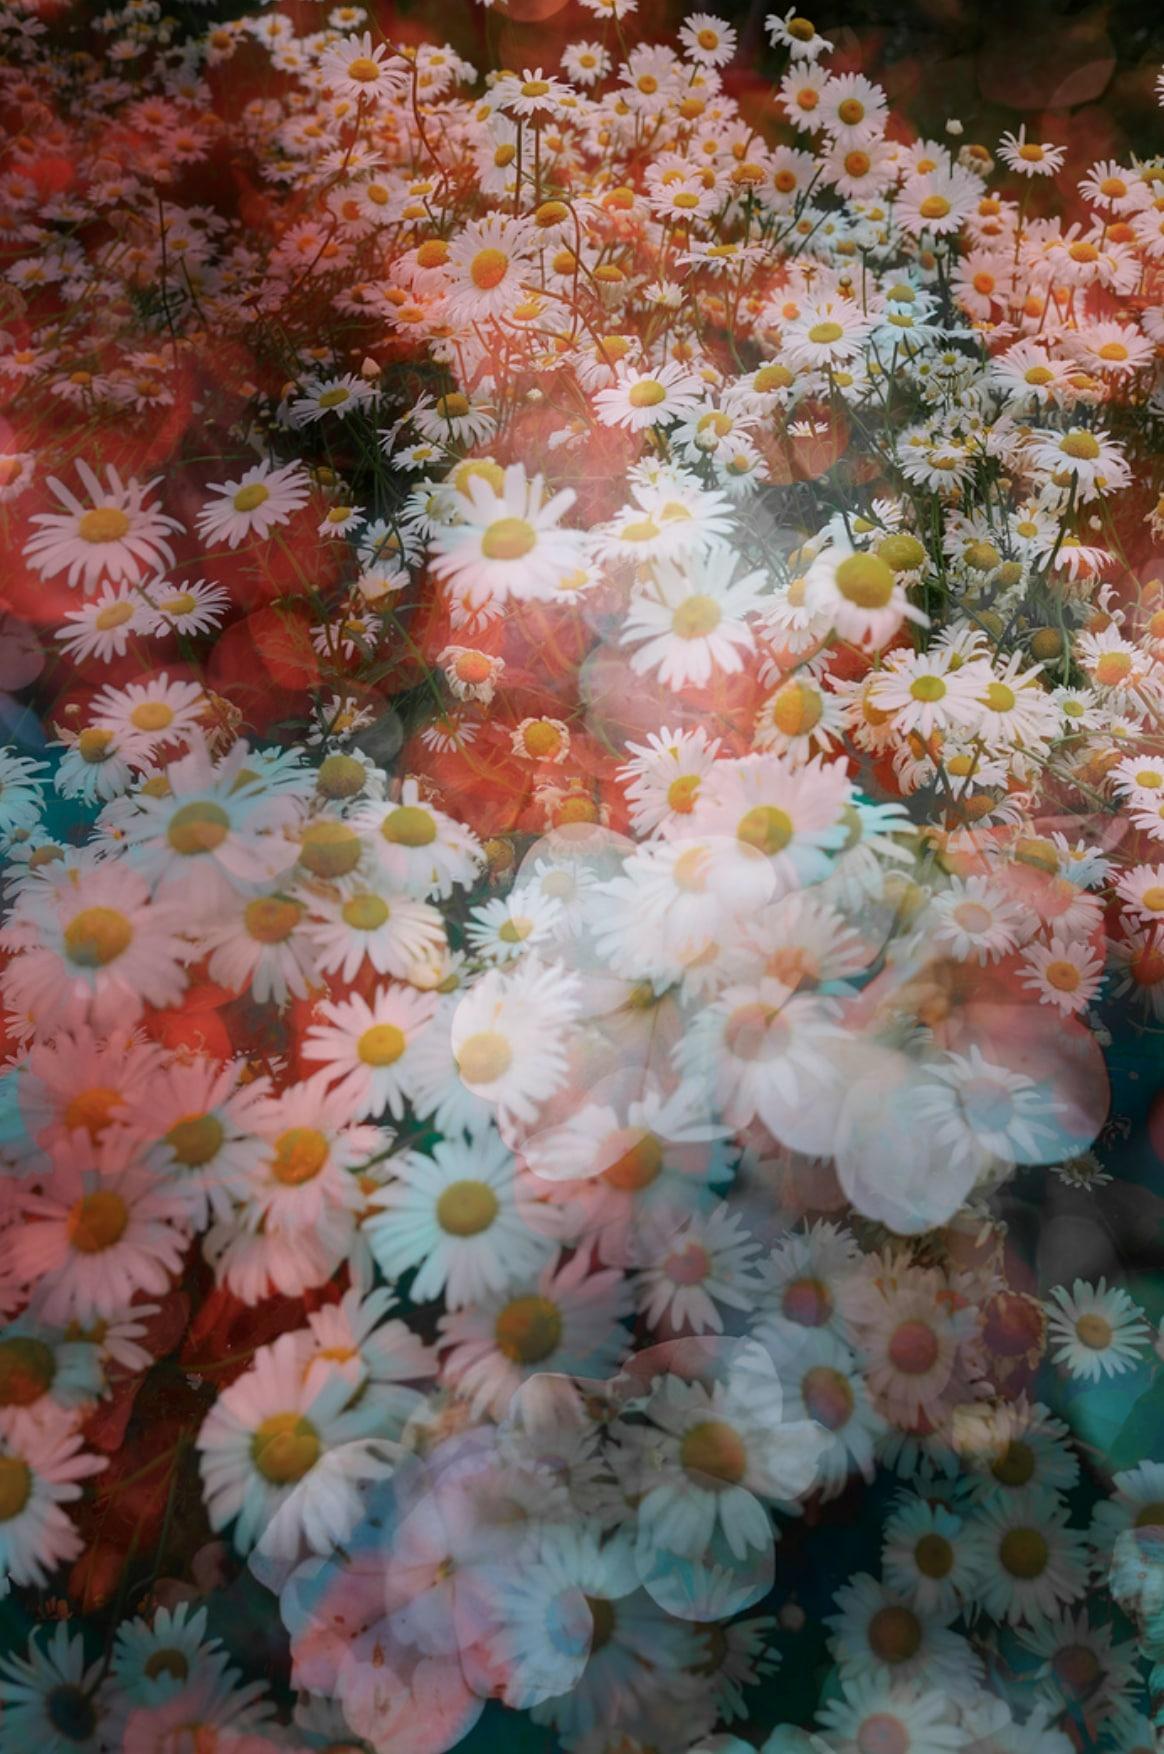 David Burdeny - In Bloom 02, Shanghai, Chine, photographie 2019, imprimée d'après